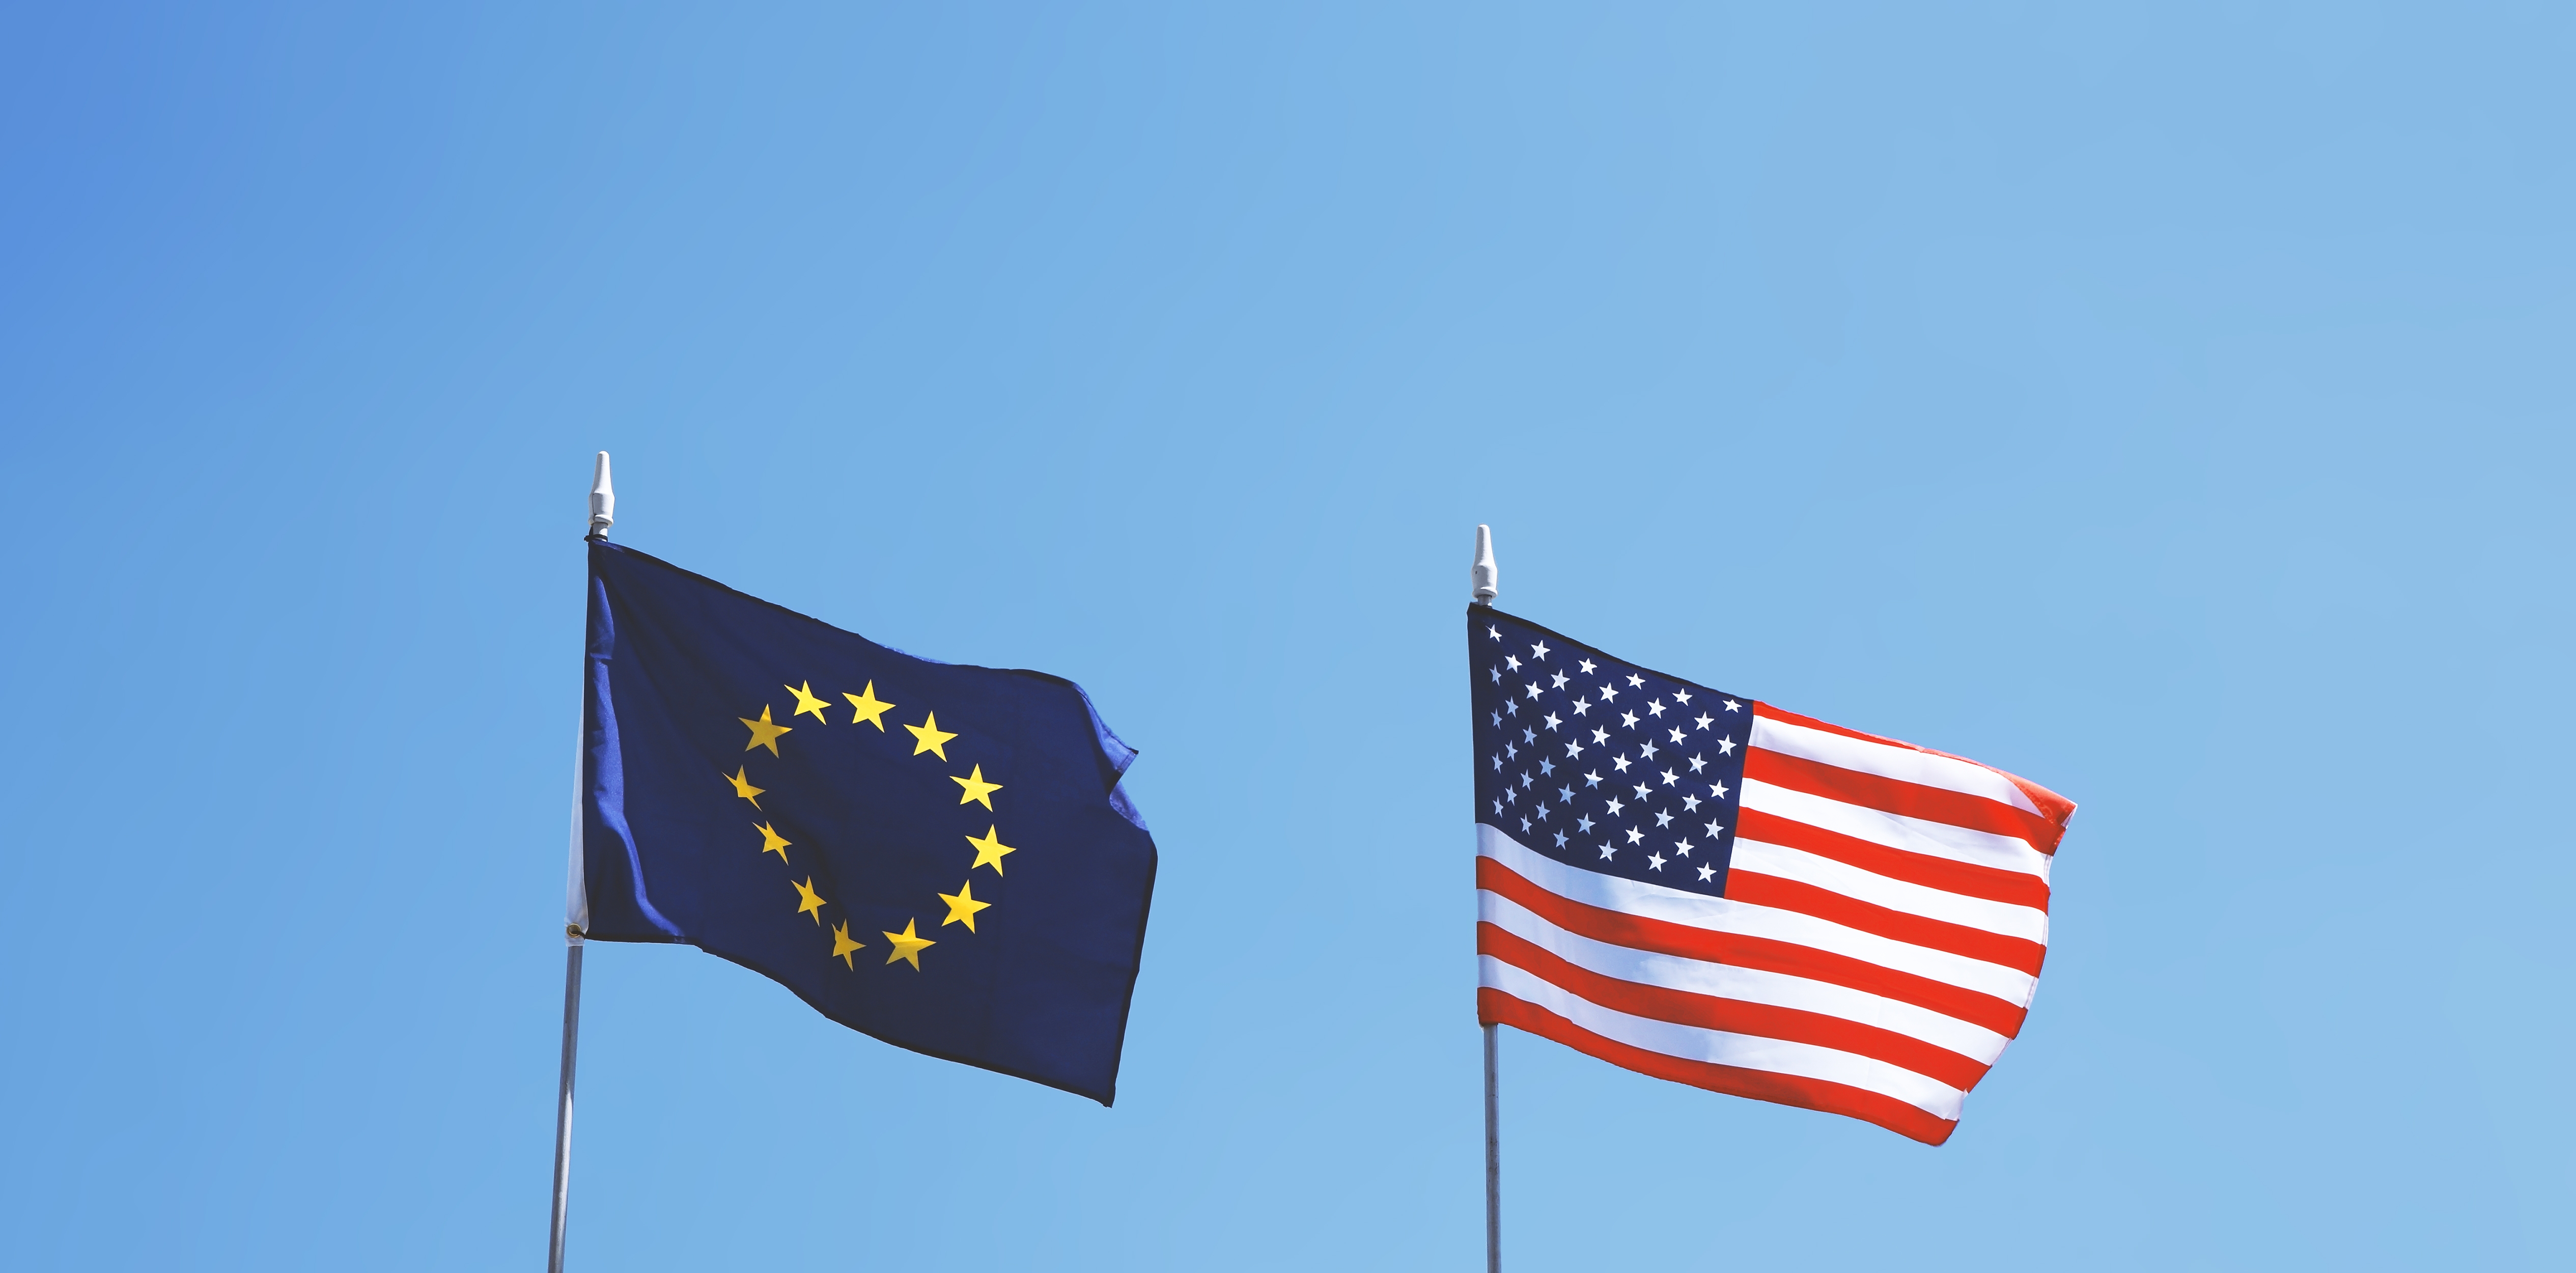 EU and USA flags